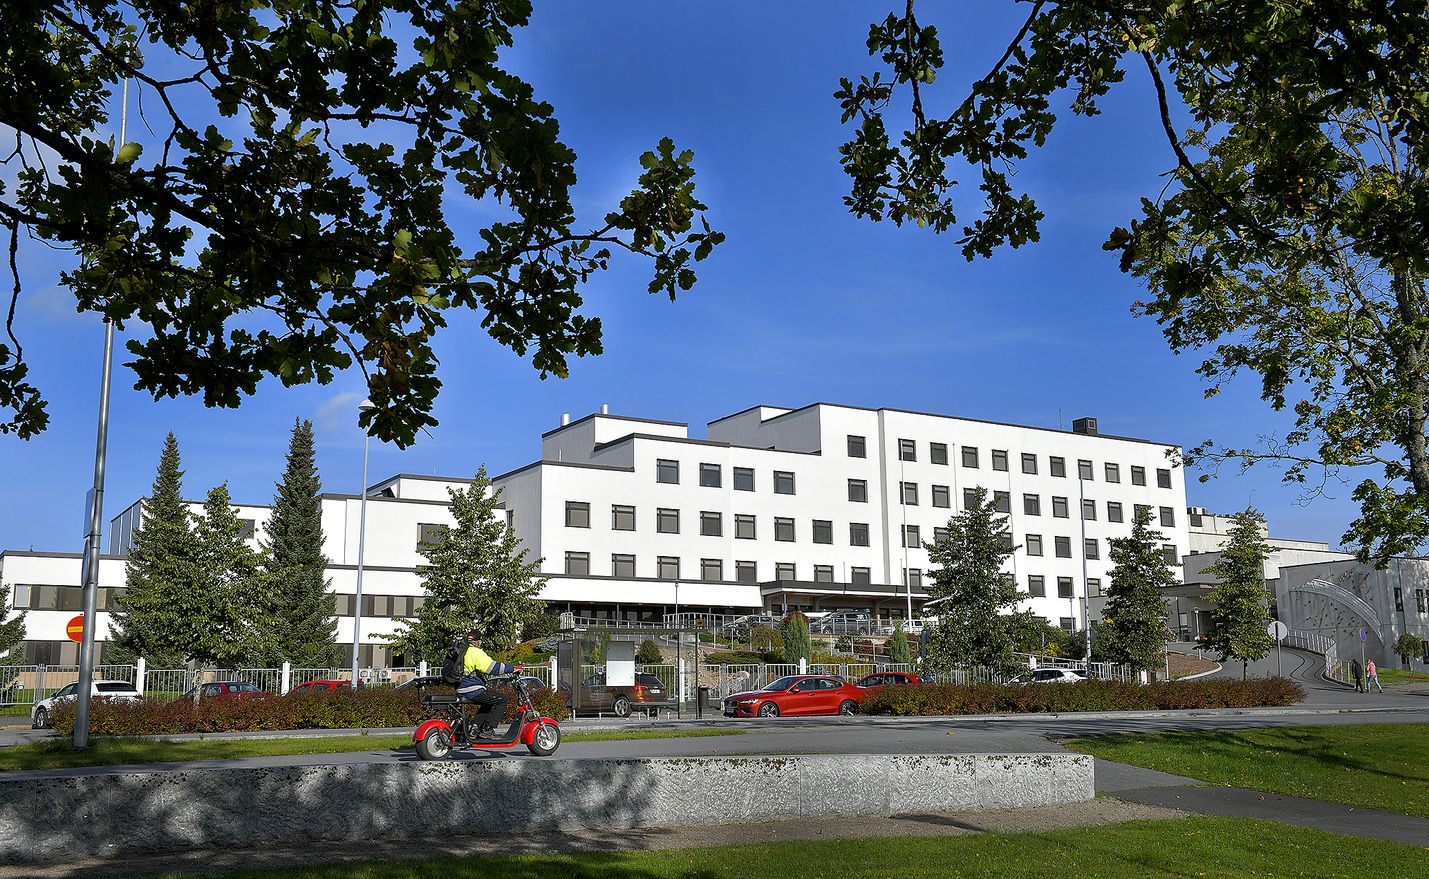 Jos hyvinvointialueen suunnitelmat etenevät maaliin, kokee Rauman sairaala melkoisen muodonmuutoksen, jossa pääterveysaseman tilalle rakennetaan moderni uudisrakennus.